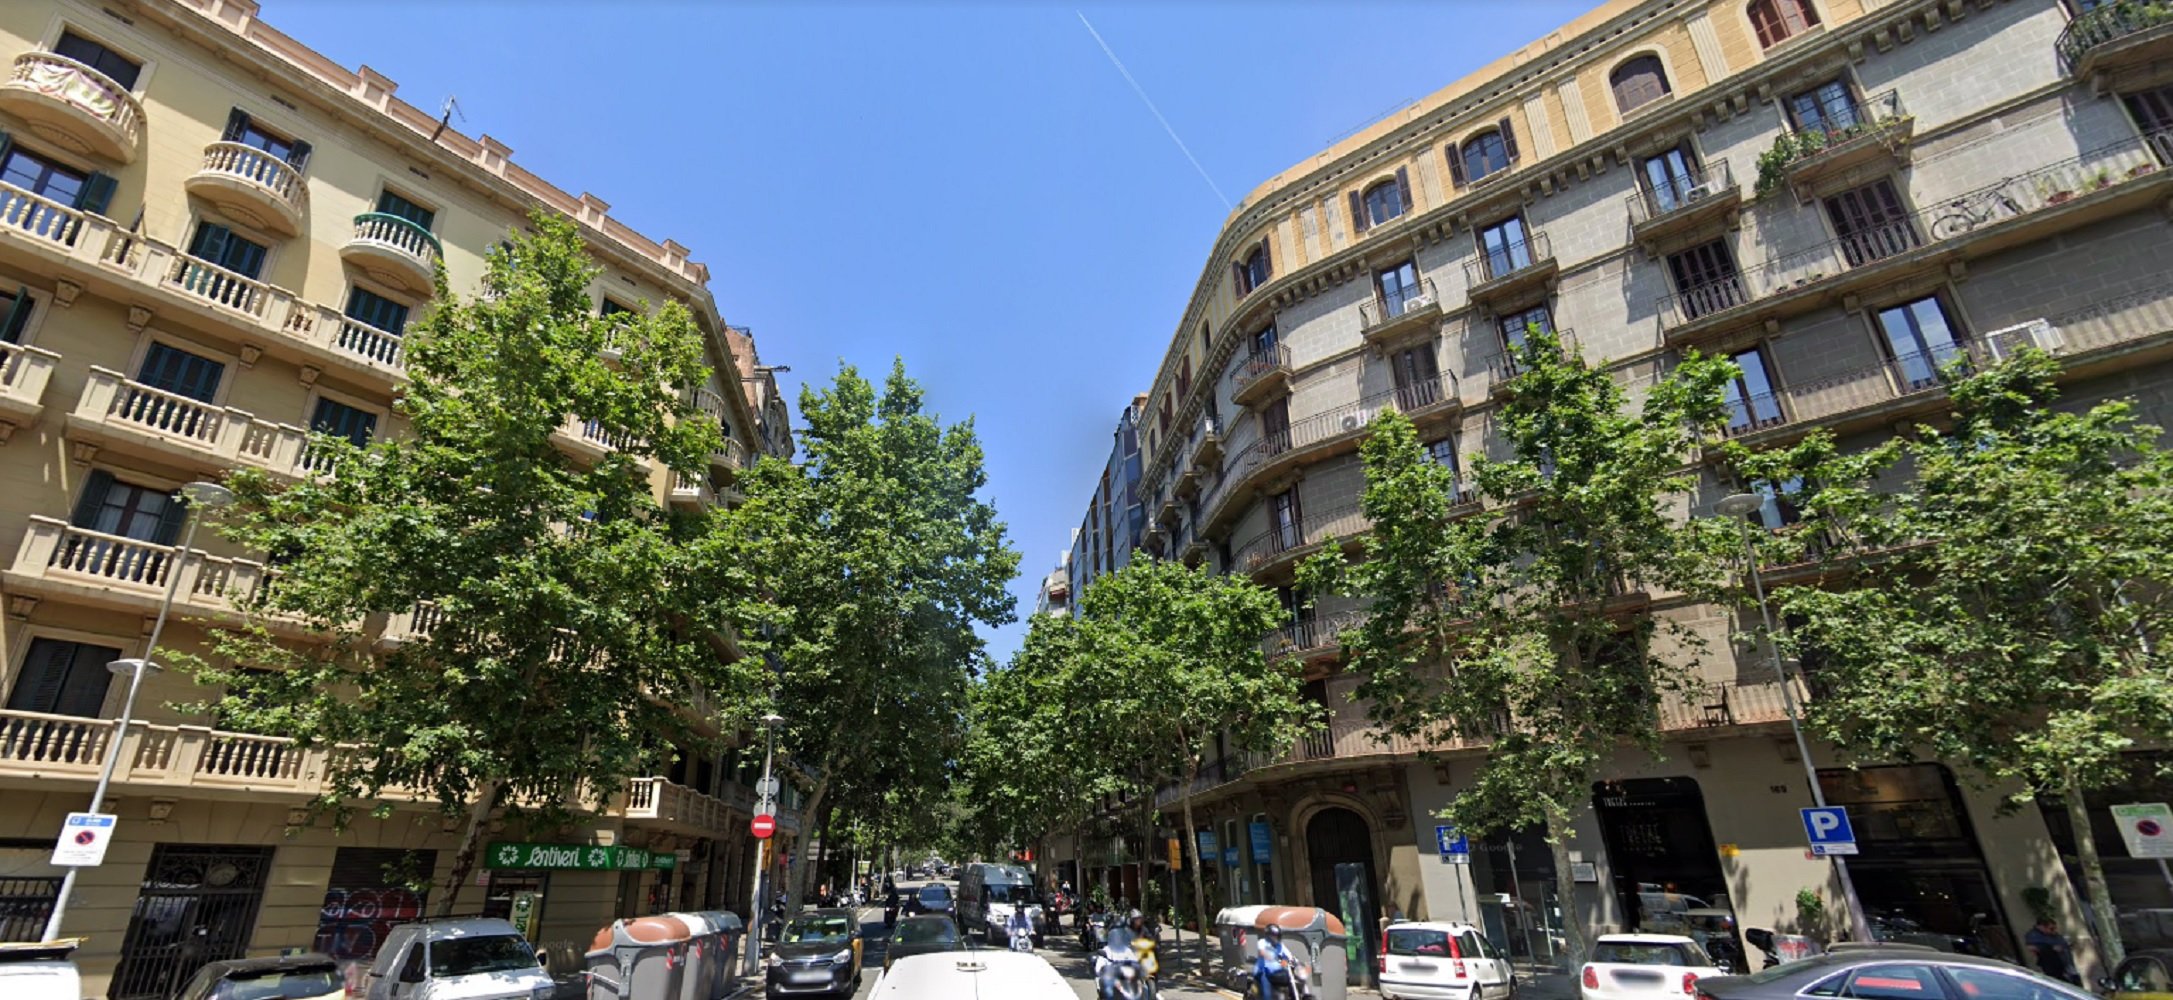 Más presión al coche en Barcelona: Muntaner y Aribau perderán un carril de circulación